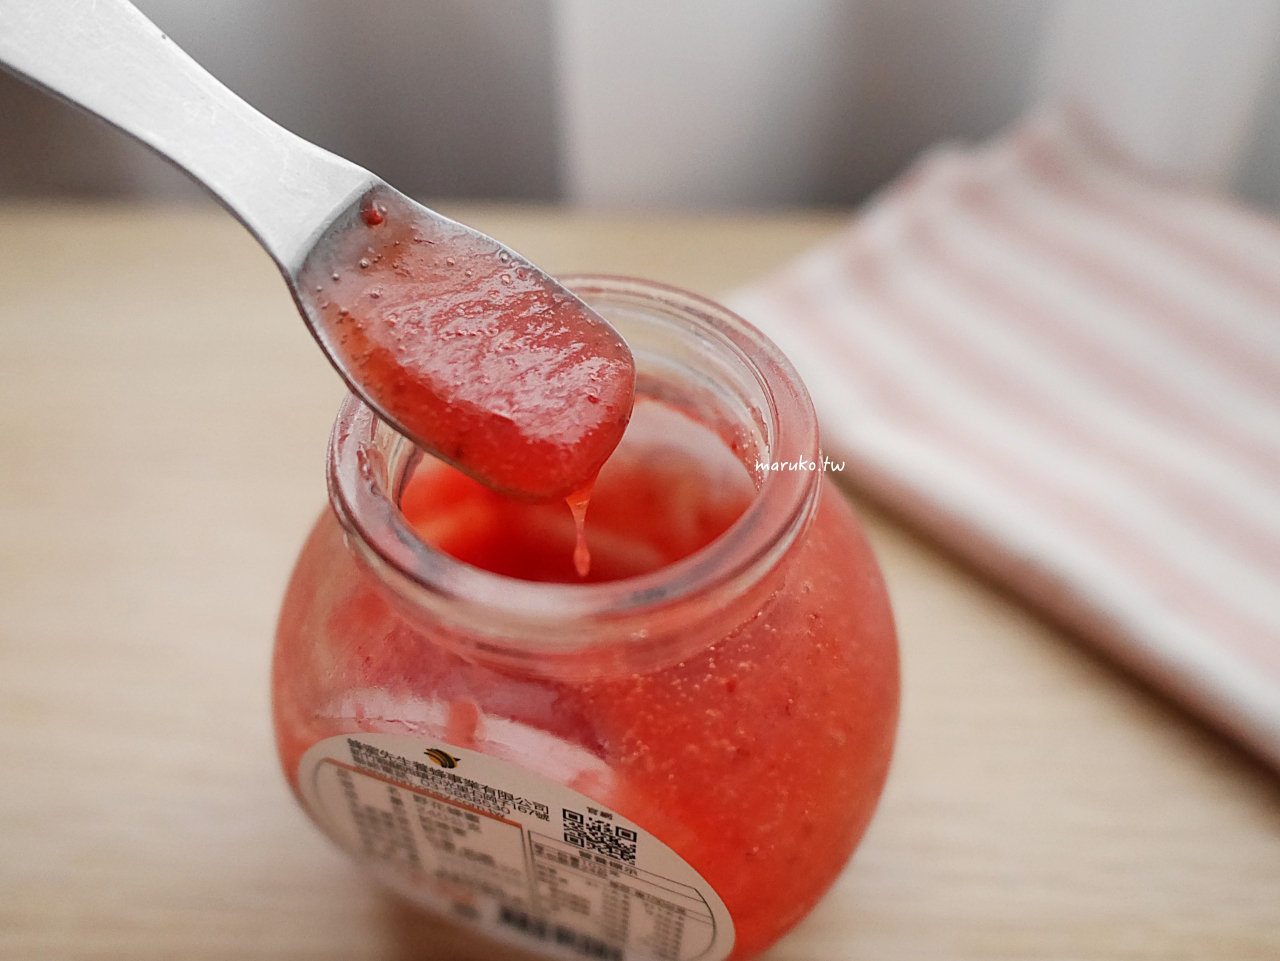 【食譜】新鮮草莓果醬 不加一滴水的草莓醬 沾著草莓吃,簡單又健康 @Maruko與美食有個約會